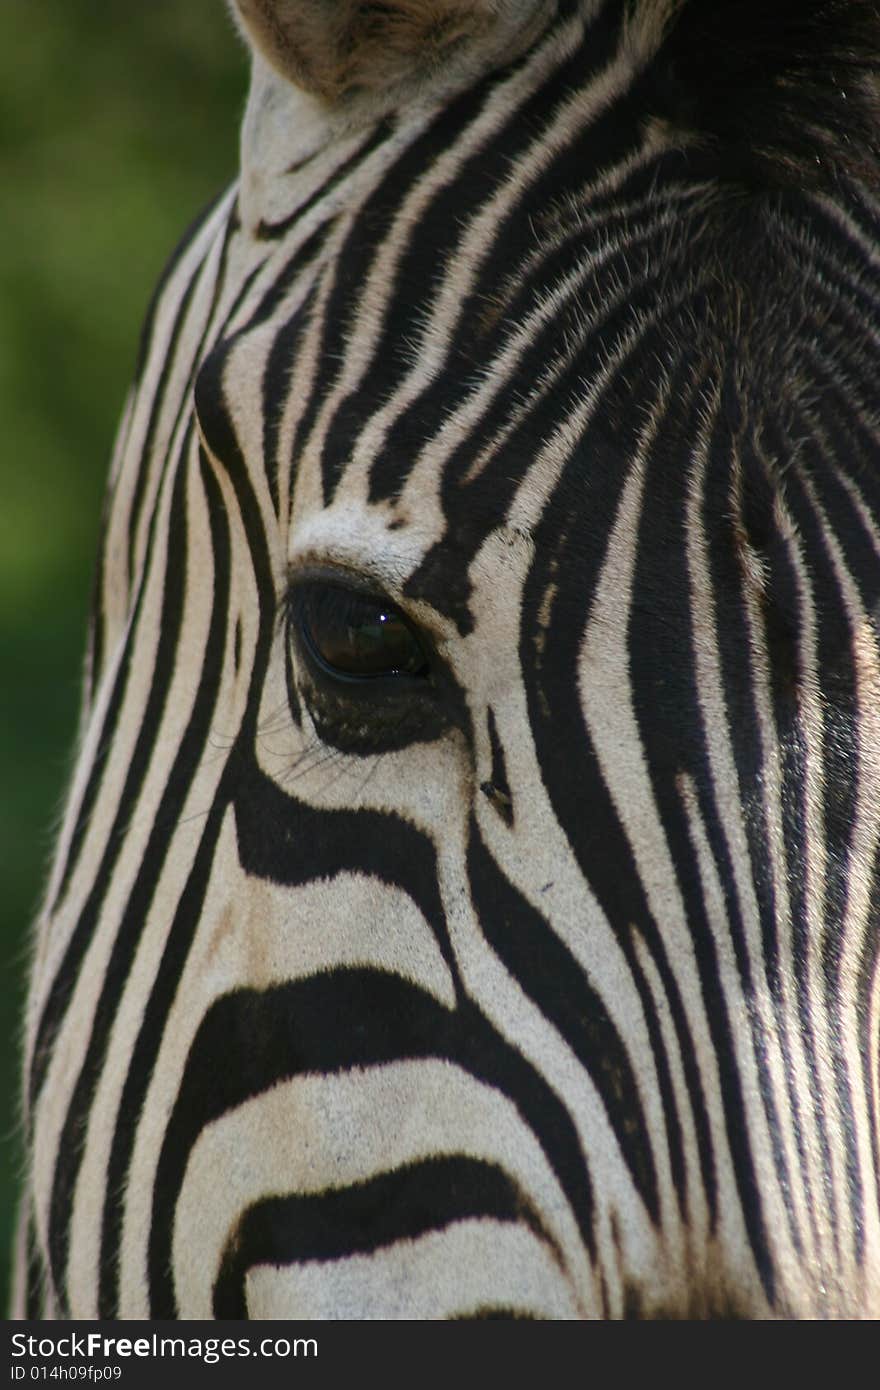 Zebra, equus, stripes, face, portrait, eye, closeup,. Zebra, equus, stripes, face, portrait, eye, closeup,